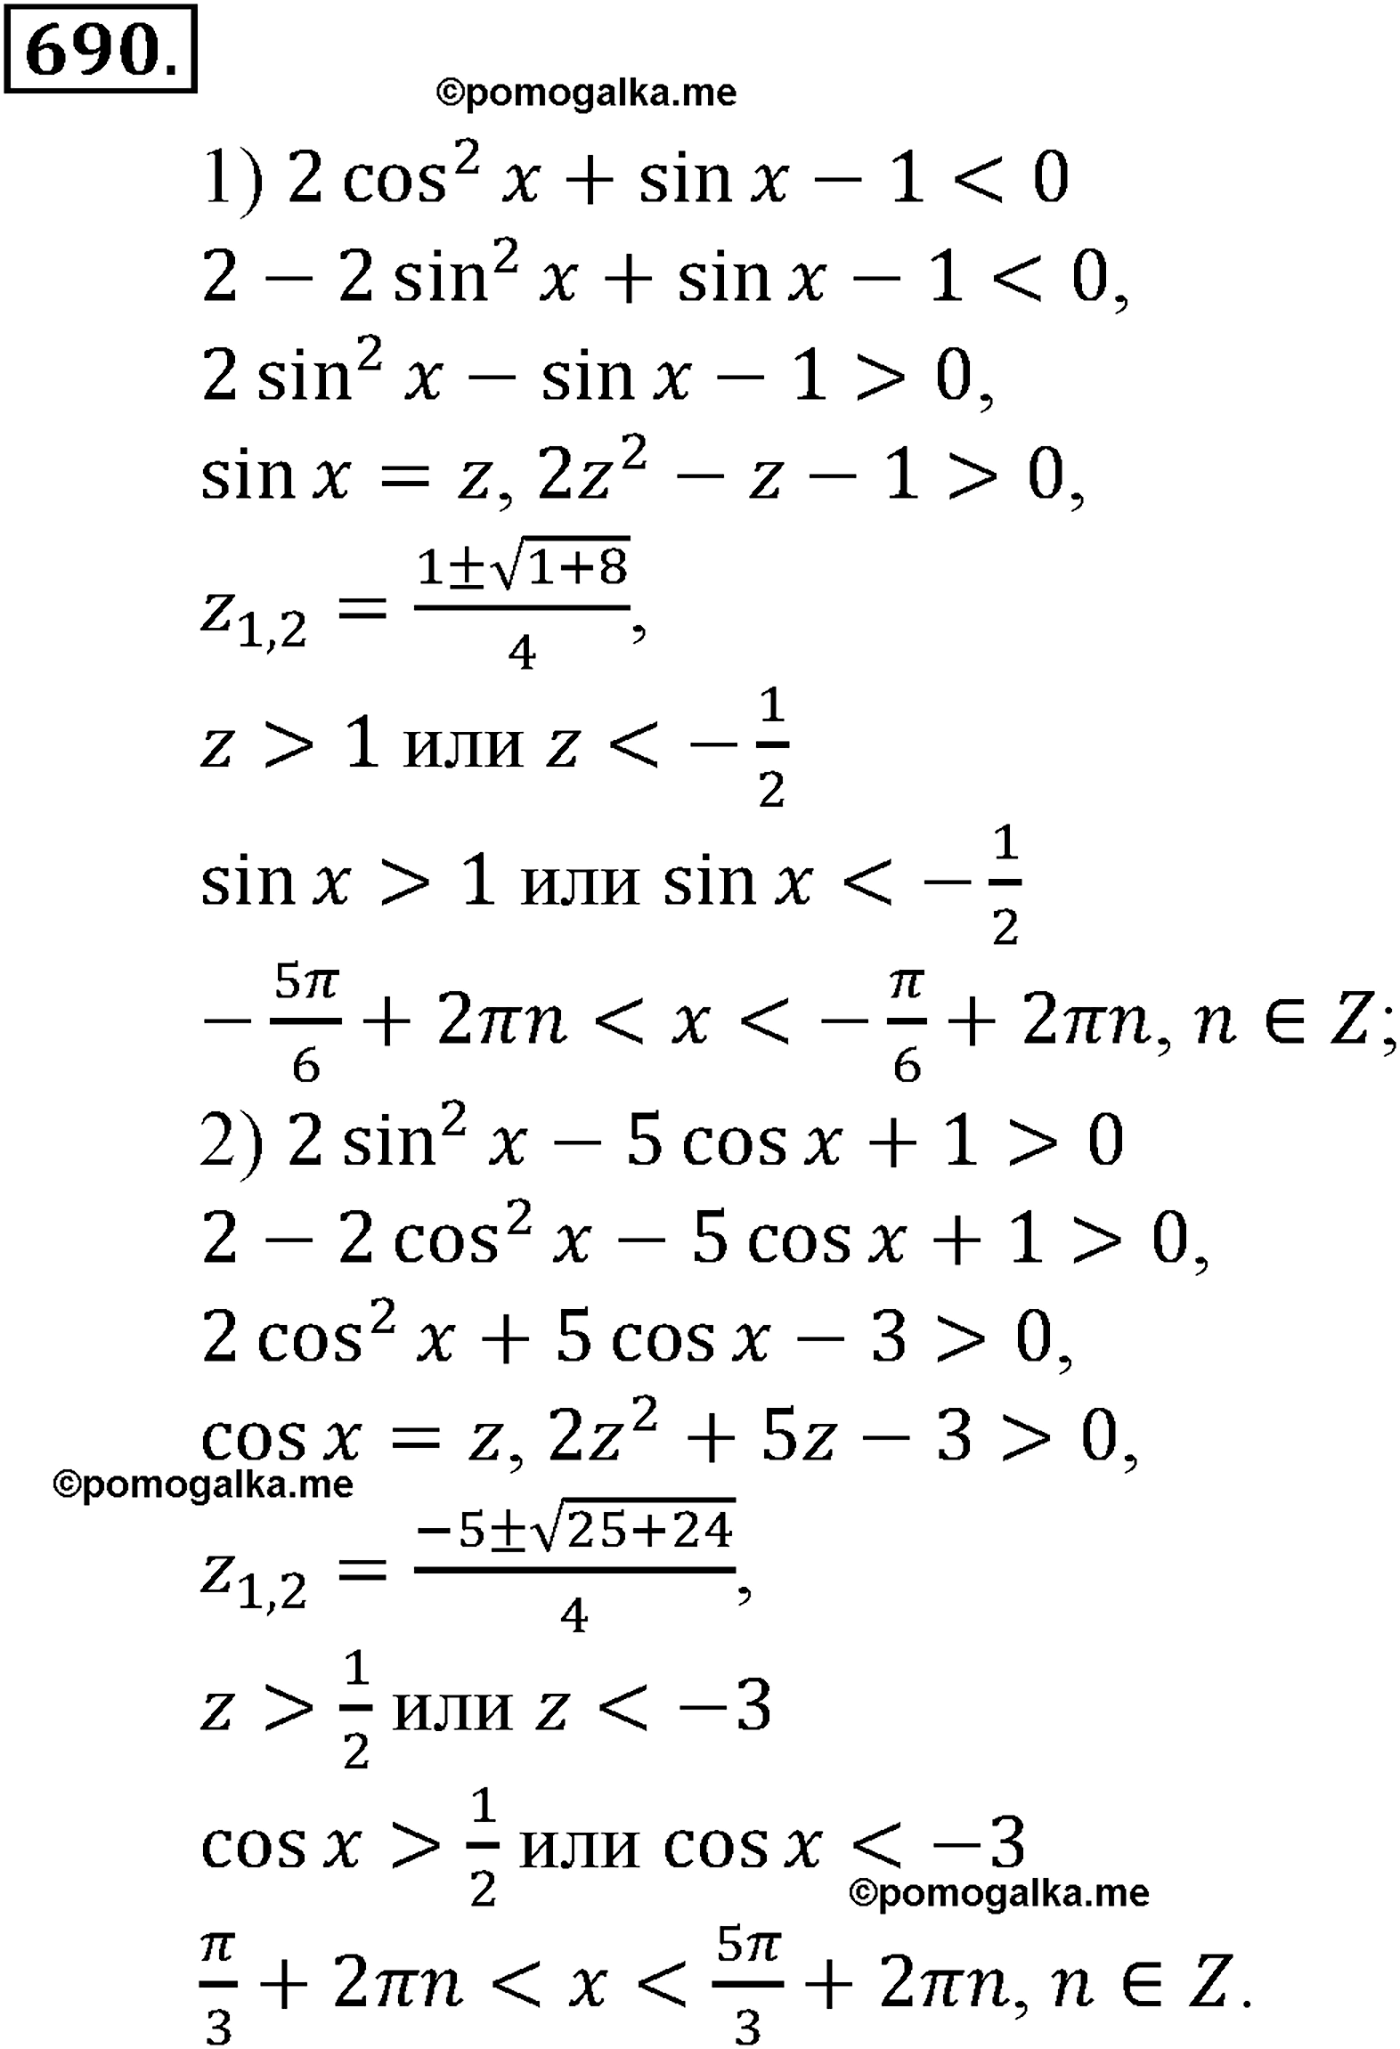 разбор задачи №690 по алгебре за 10-11 класс из учебника Алимова, Колягина